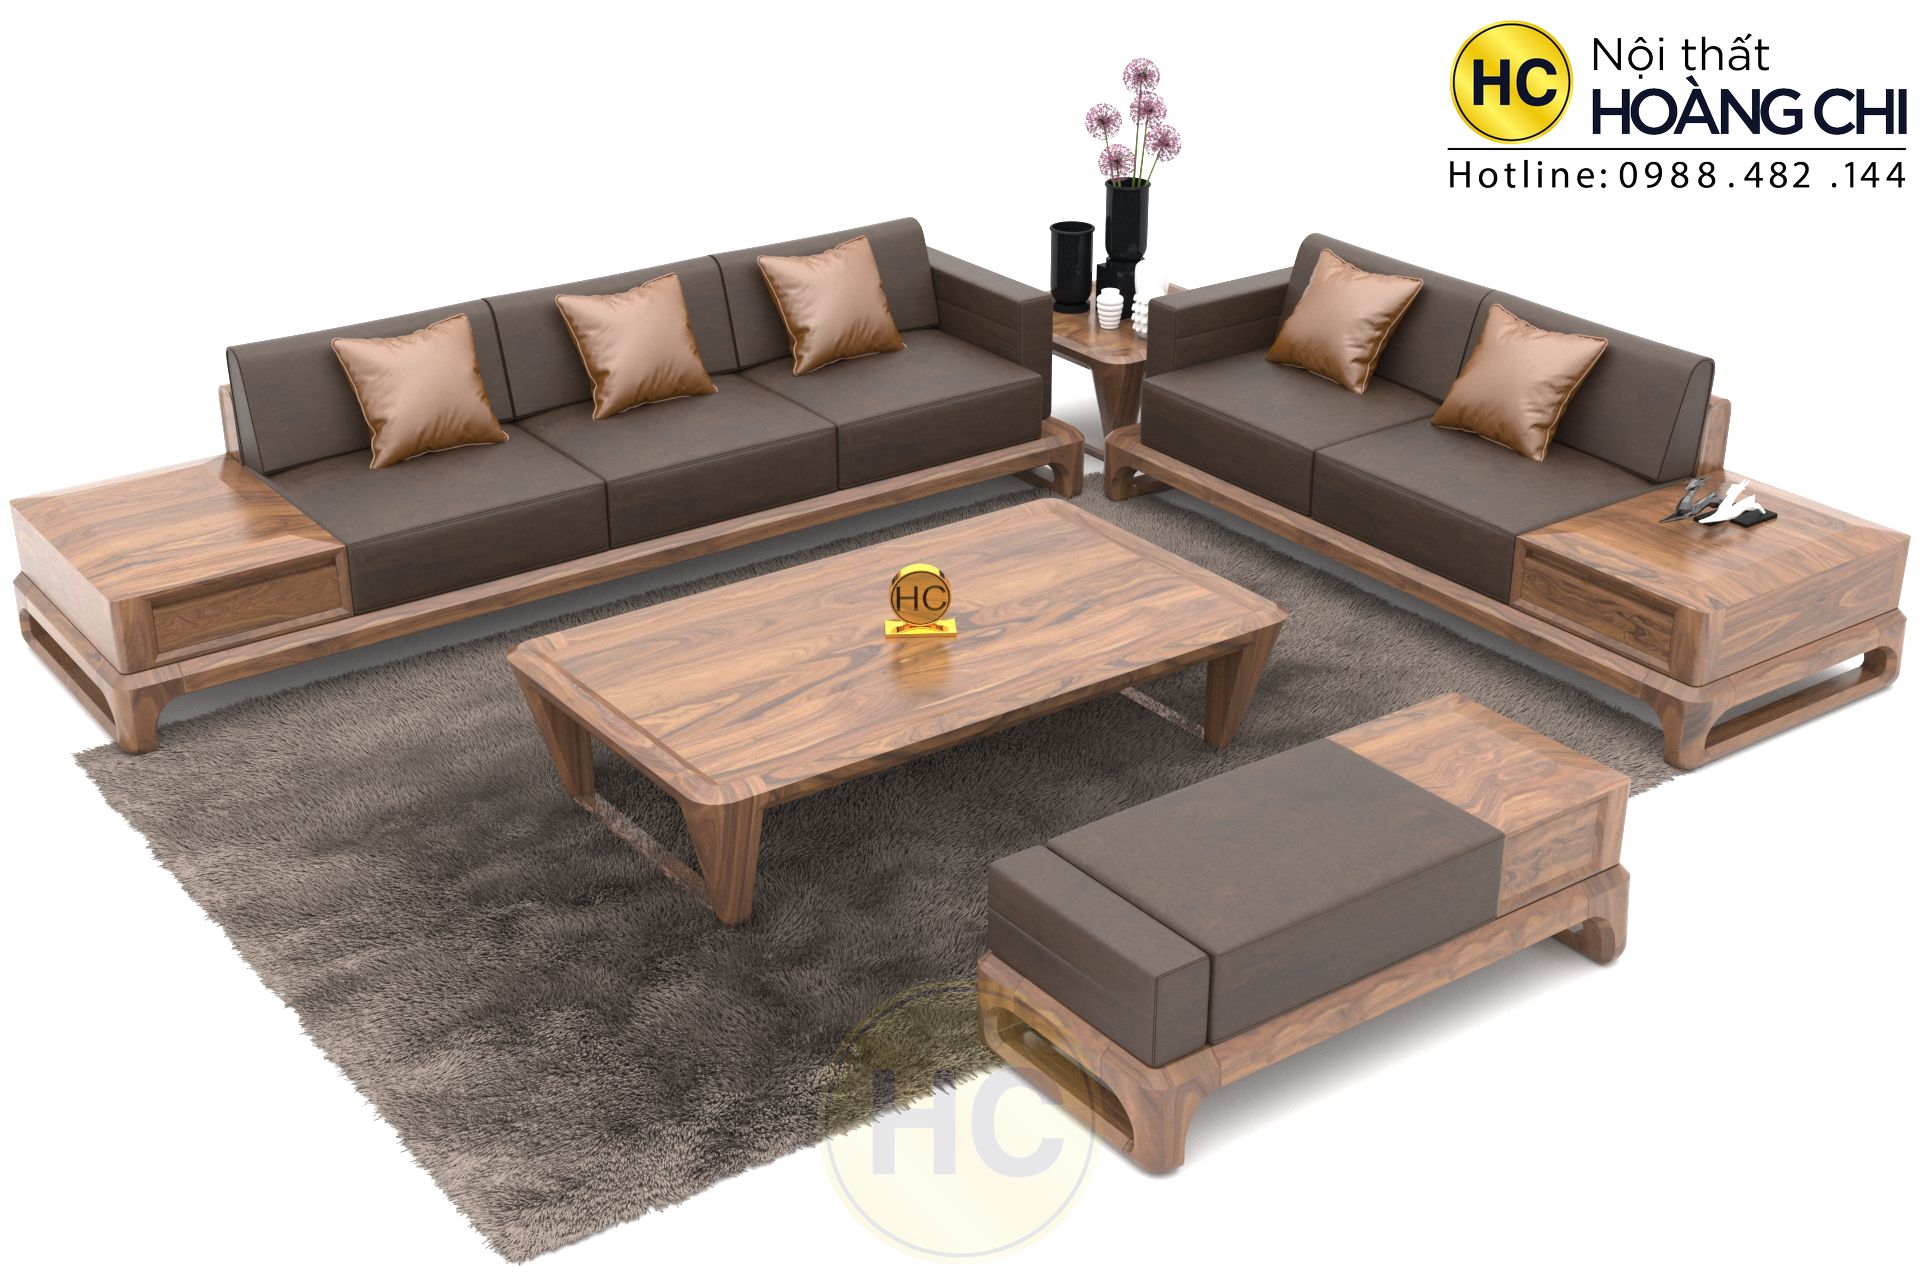 Bộ bàn ghế sofa gỗ hiện đại là sản phẩm được đánh giá cao về tính thẩm mỹ và tiện dụng. Với thiết kế đơn giản nhưng sáng tạo, sản phẩm sẽ đem đến cho ngôi nhà của bạn một không gian đầy phong cách và hiện đại. Chất liệu gỗ cao cấp được sử dụng cho sản phẩm, mang đến độ bền và đẳng cấp.